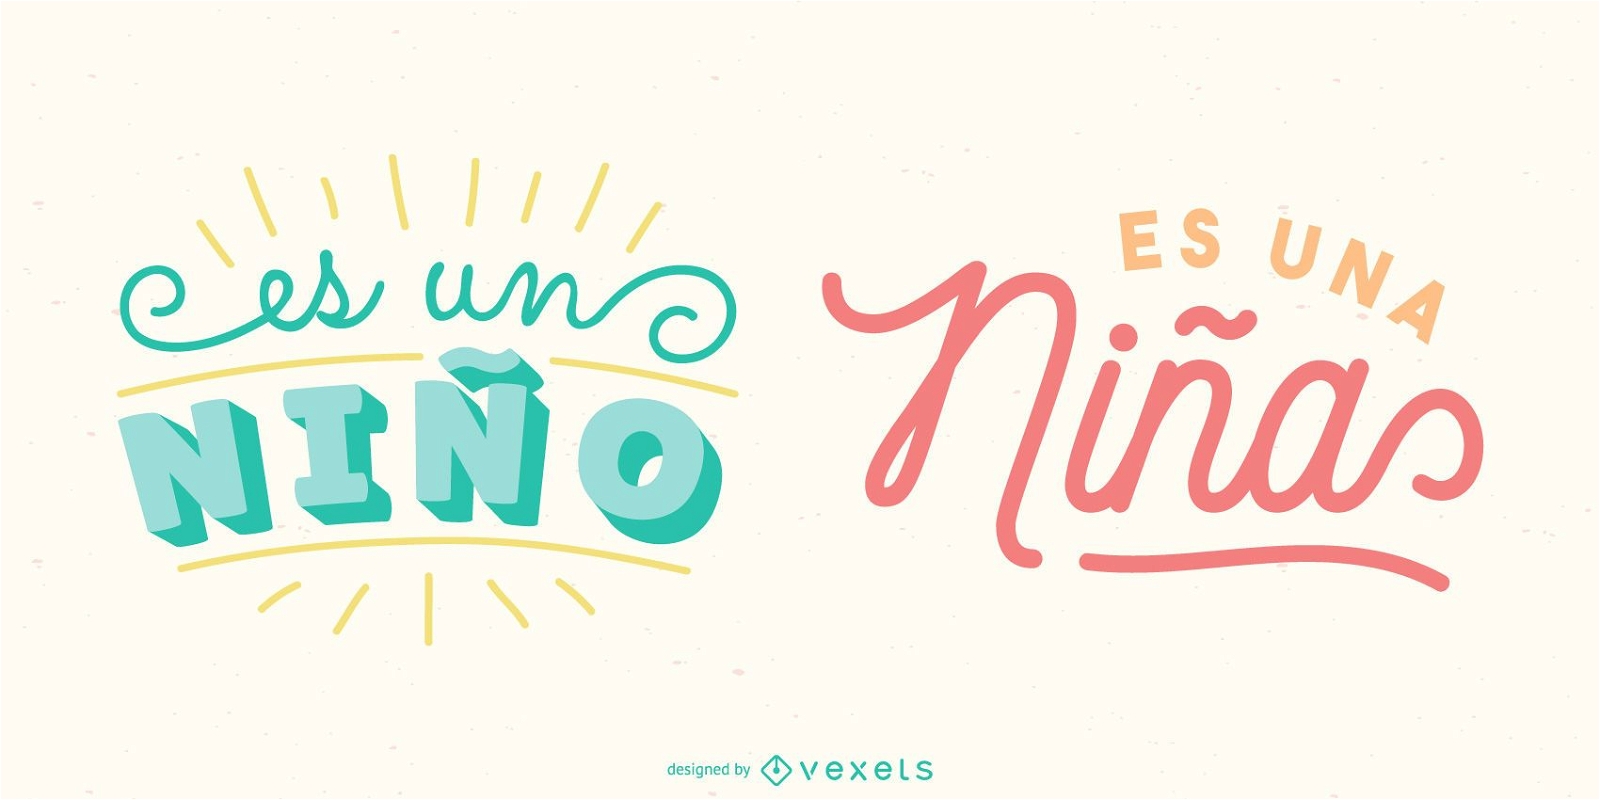 Novo pacote de estandartes para beb?s com letras em espanhol